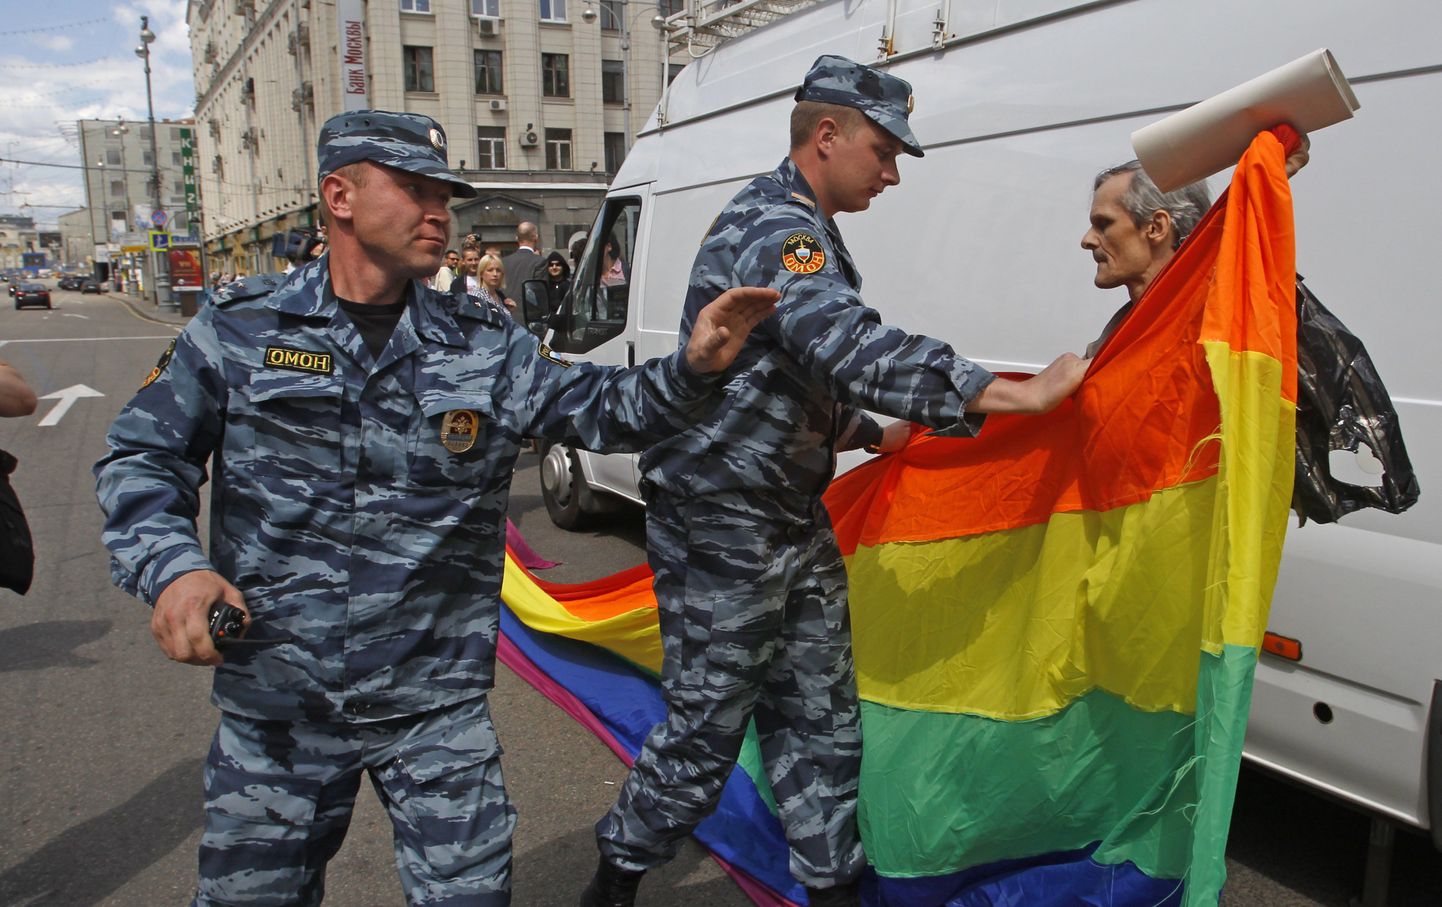 Venemaa politsei eriüksus tegelemas geiaktivistiga.